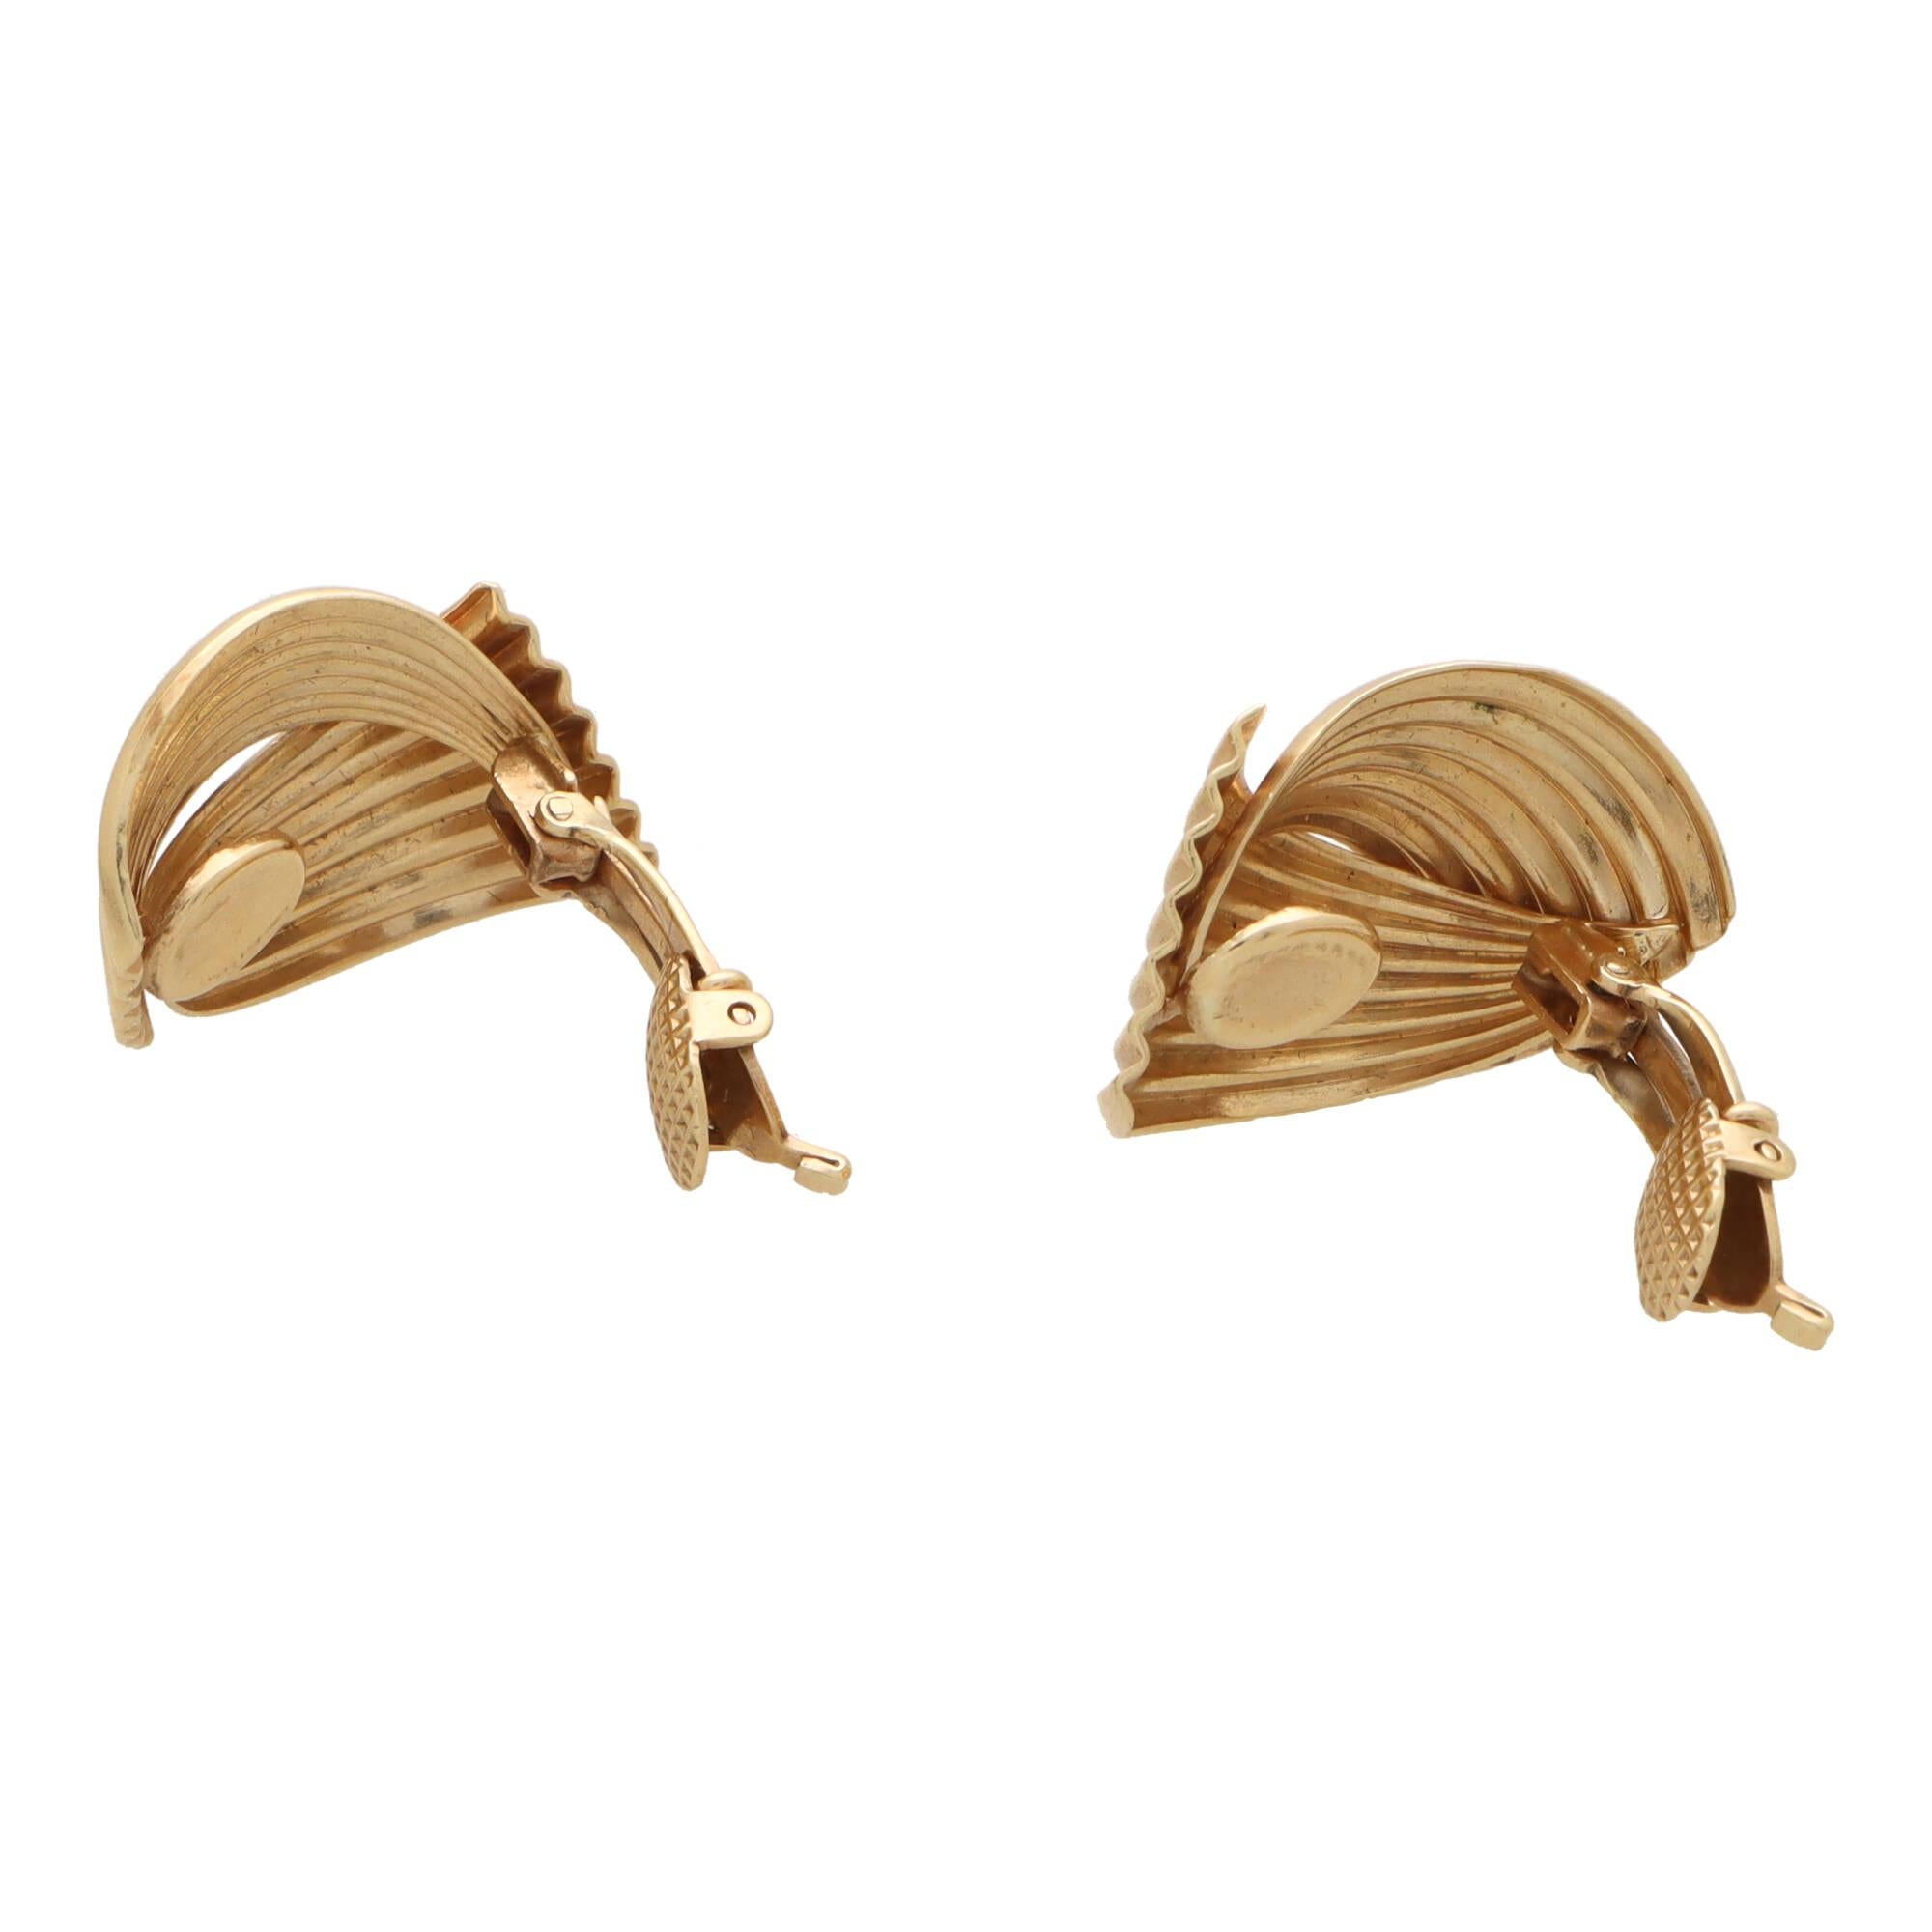 Ein stilvolles, retro-inspiriertes Paar geriffelte Fächerohrringe von Tiffany & Co. aus 14 Karat Roségold.

Jeder Ohrring besteht aus zwei geriffelten Fächermotiven, die so zusammengesetzt sind, dass sie am Ohr wie ein klobiges Gebilde wirken. Die